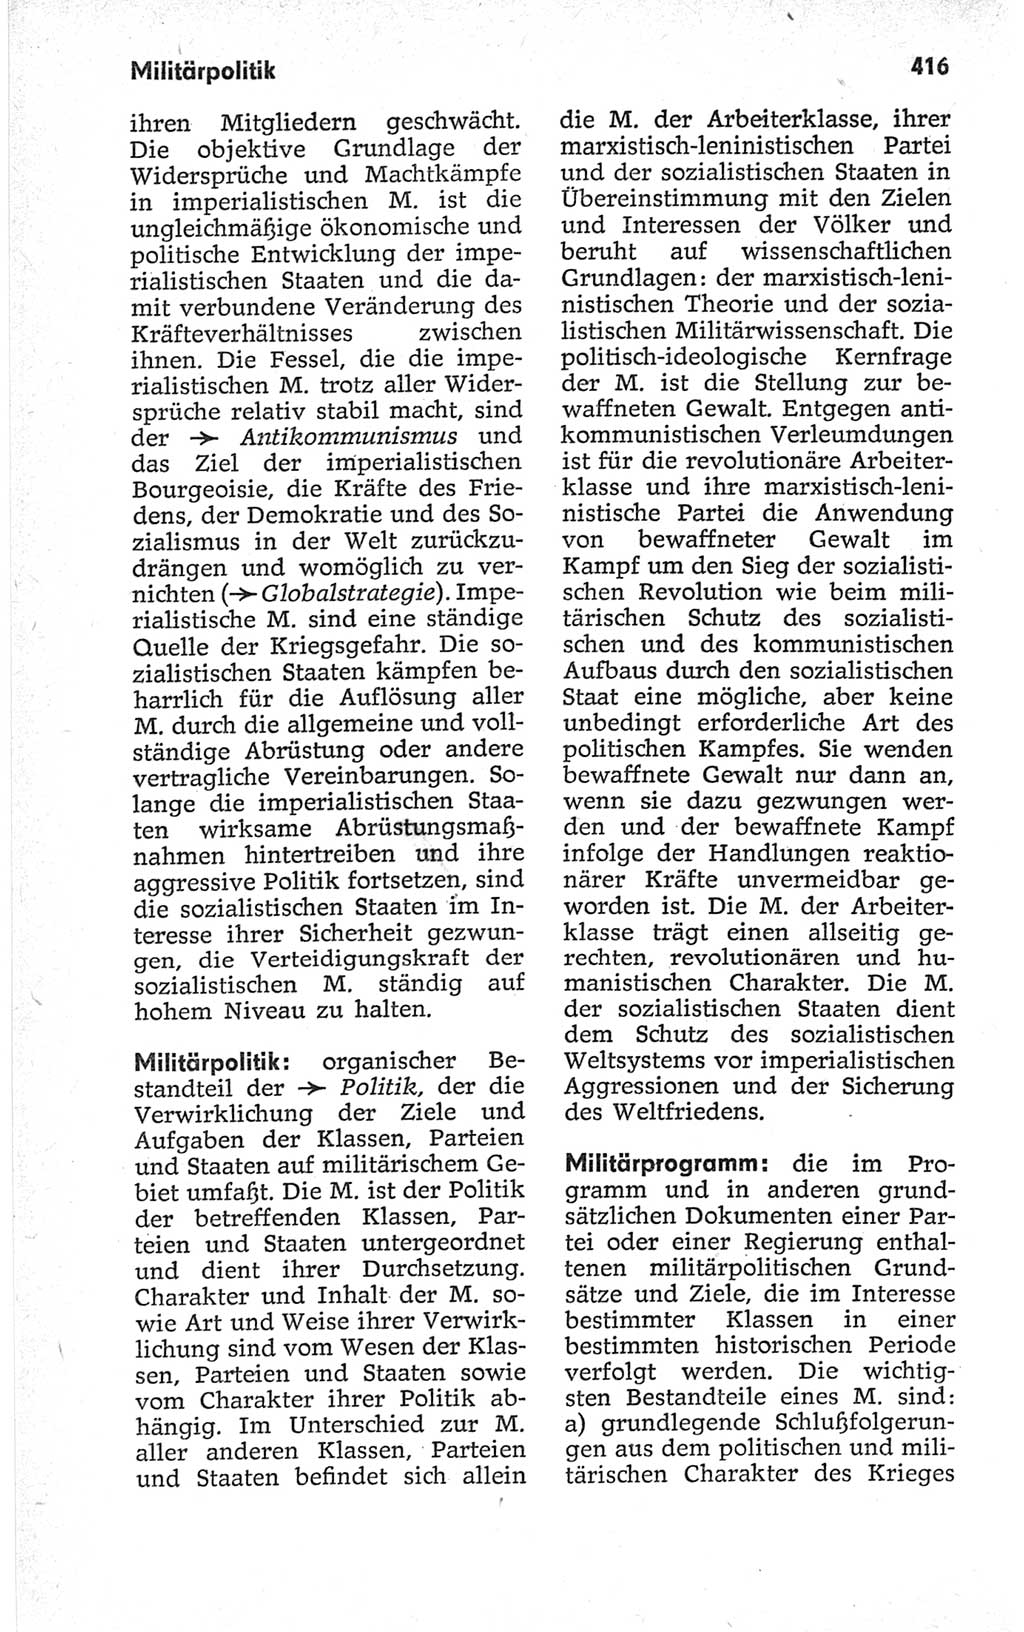 Kleines politisches Wörterbuch [Deutsche Demokratische Republik (DDR)] 1967, Seite 416 (Kl. pol. Wb. DDR 1967, S. 416)